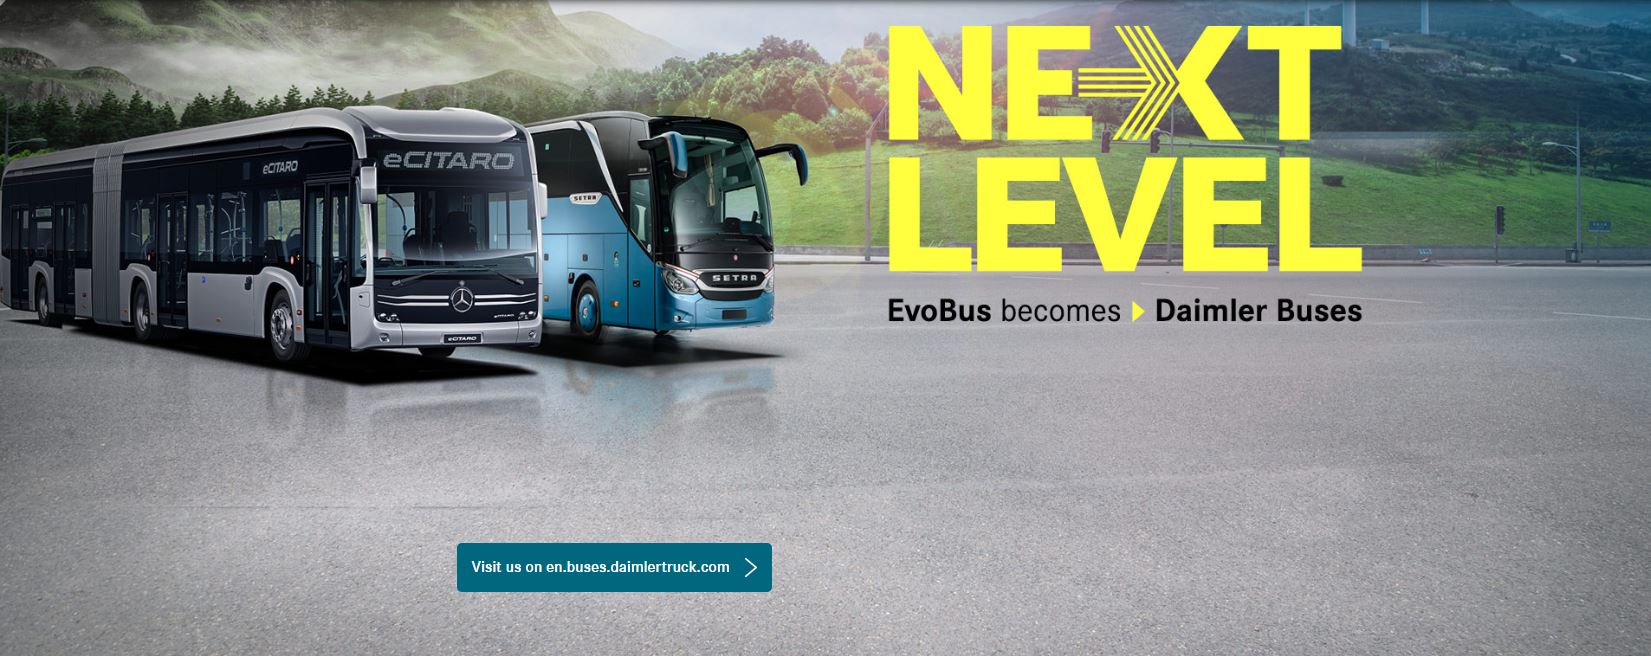 EvoBus (UK) changing name to Daimler Buses UK